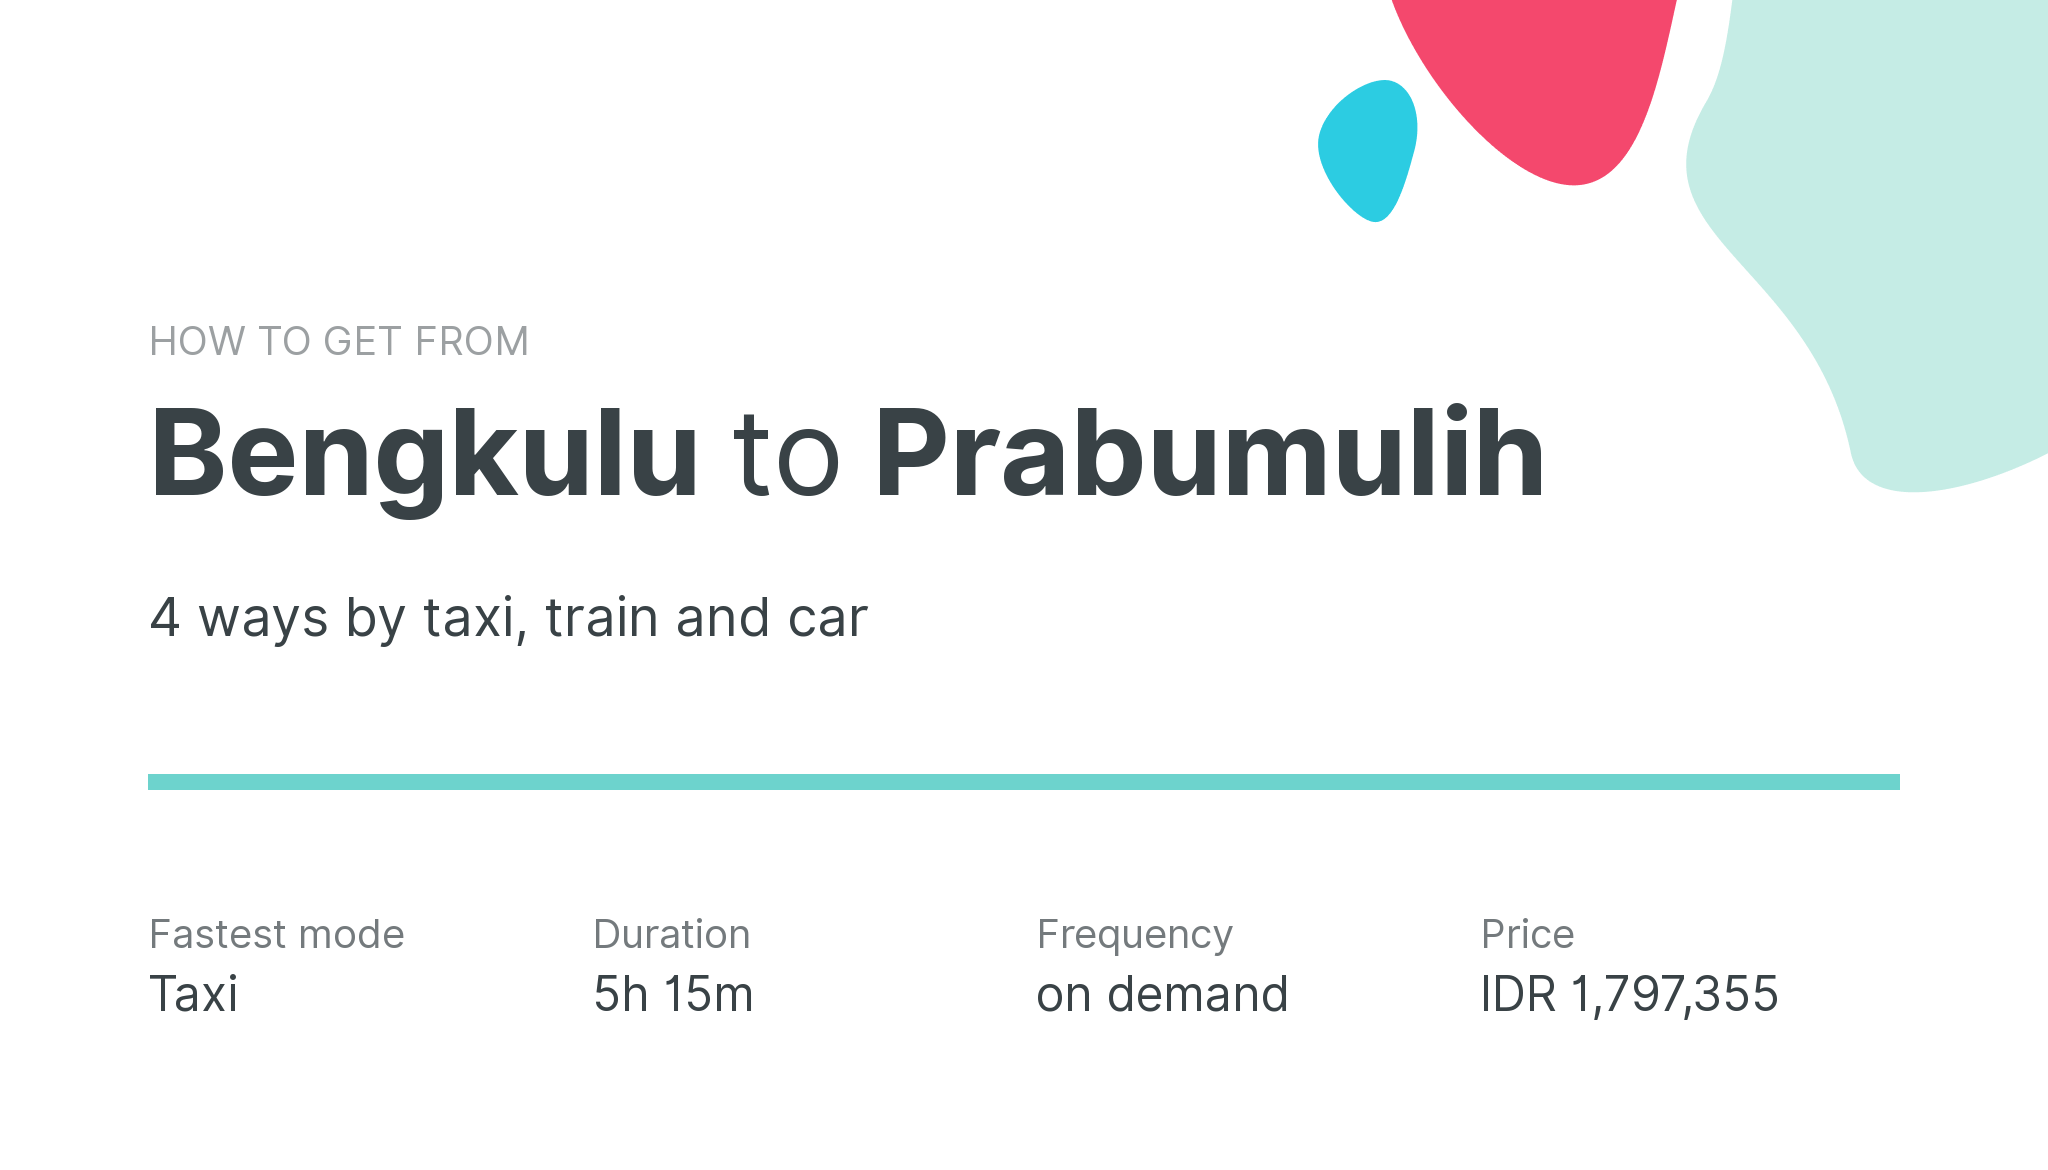 How do I get from Bengkulu to Prabumulih